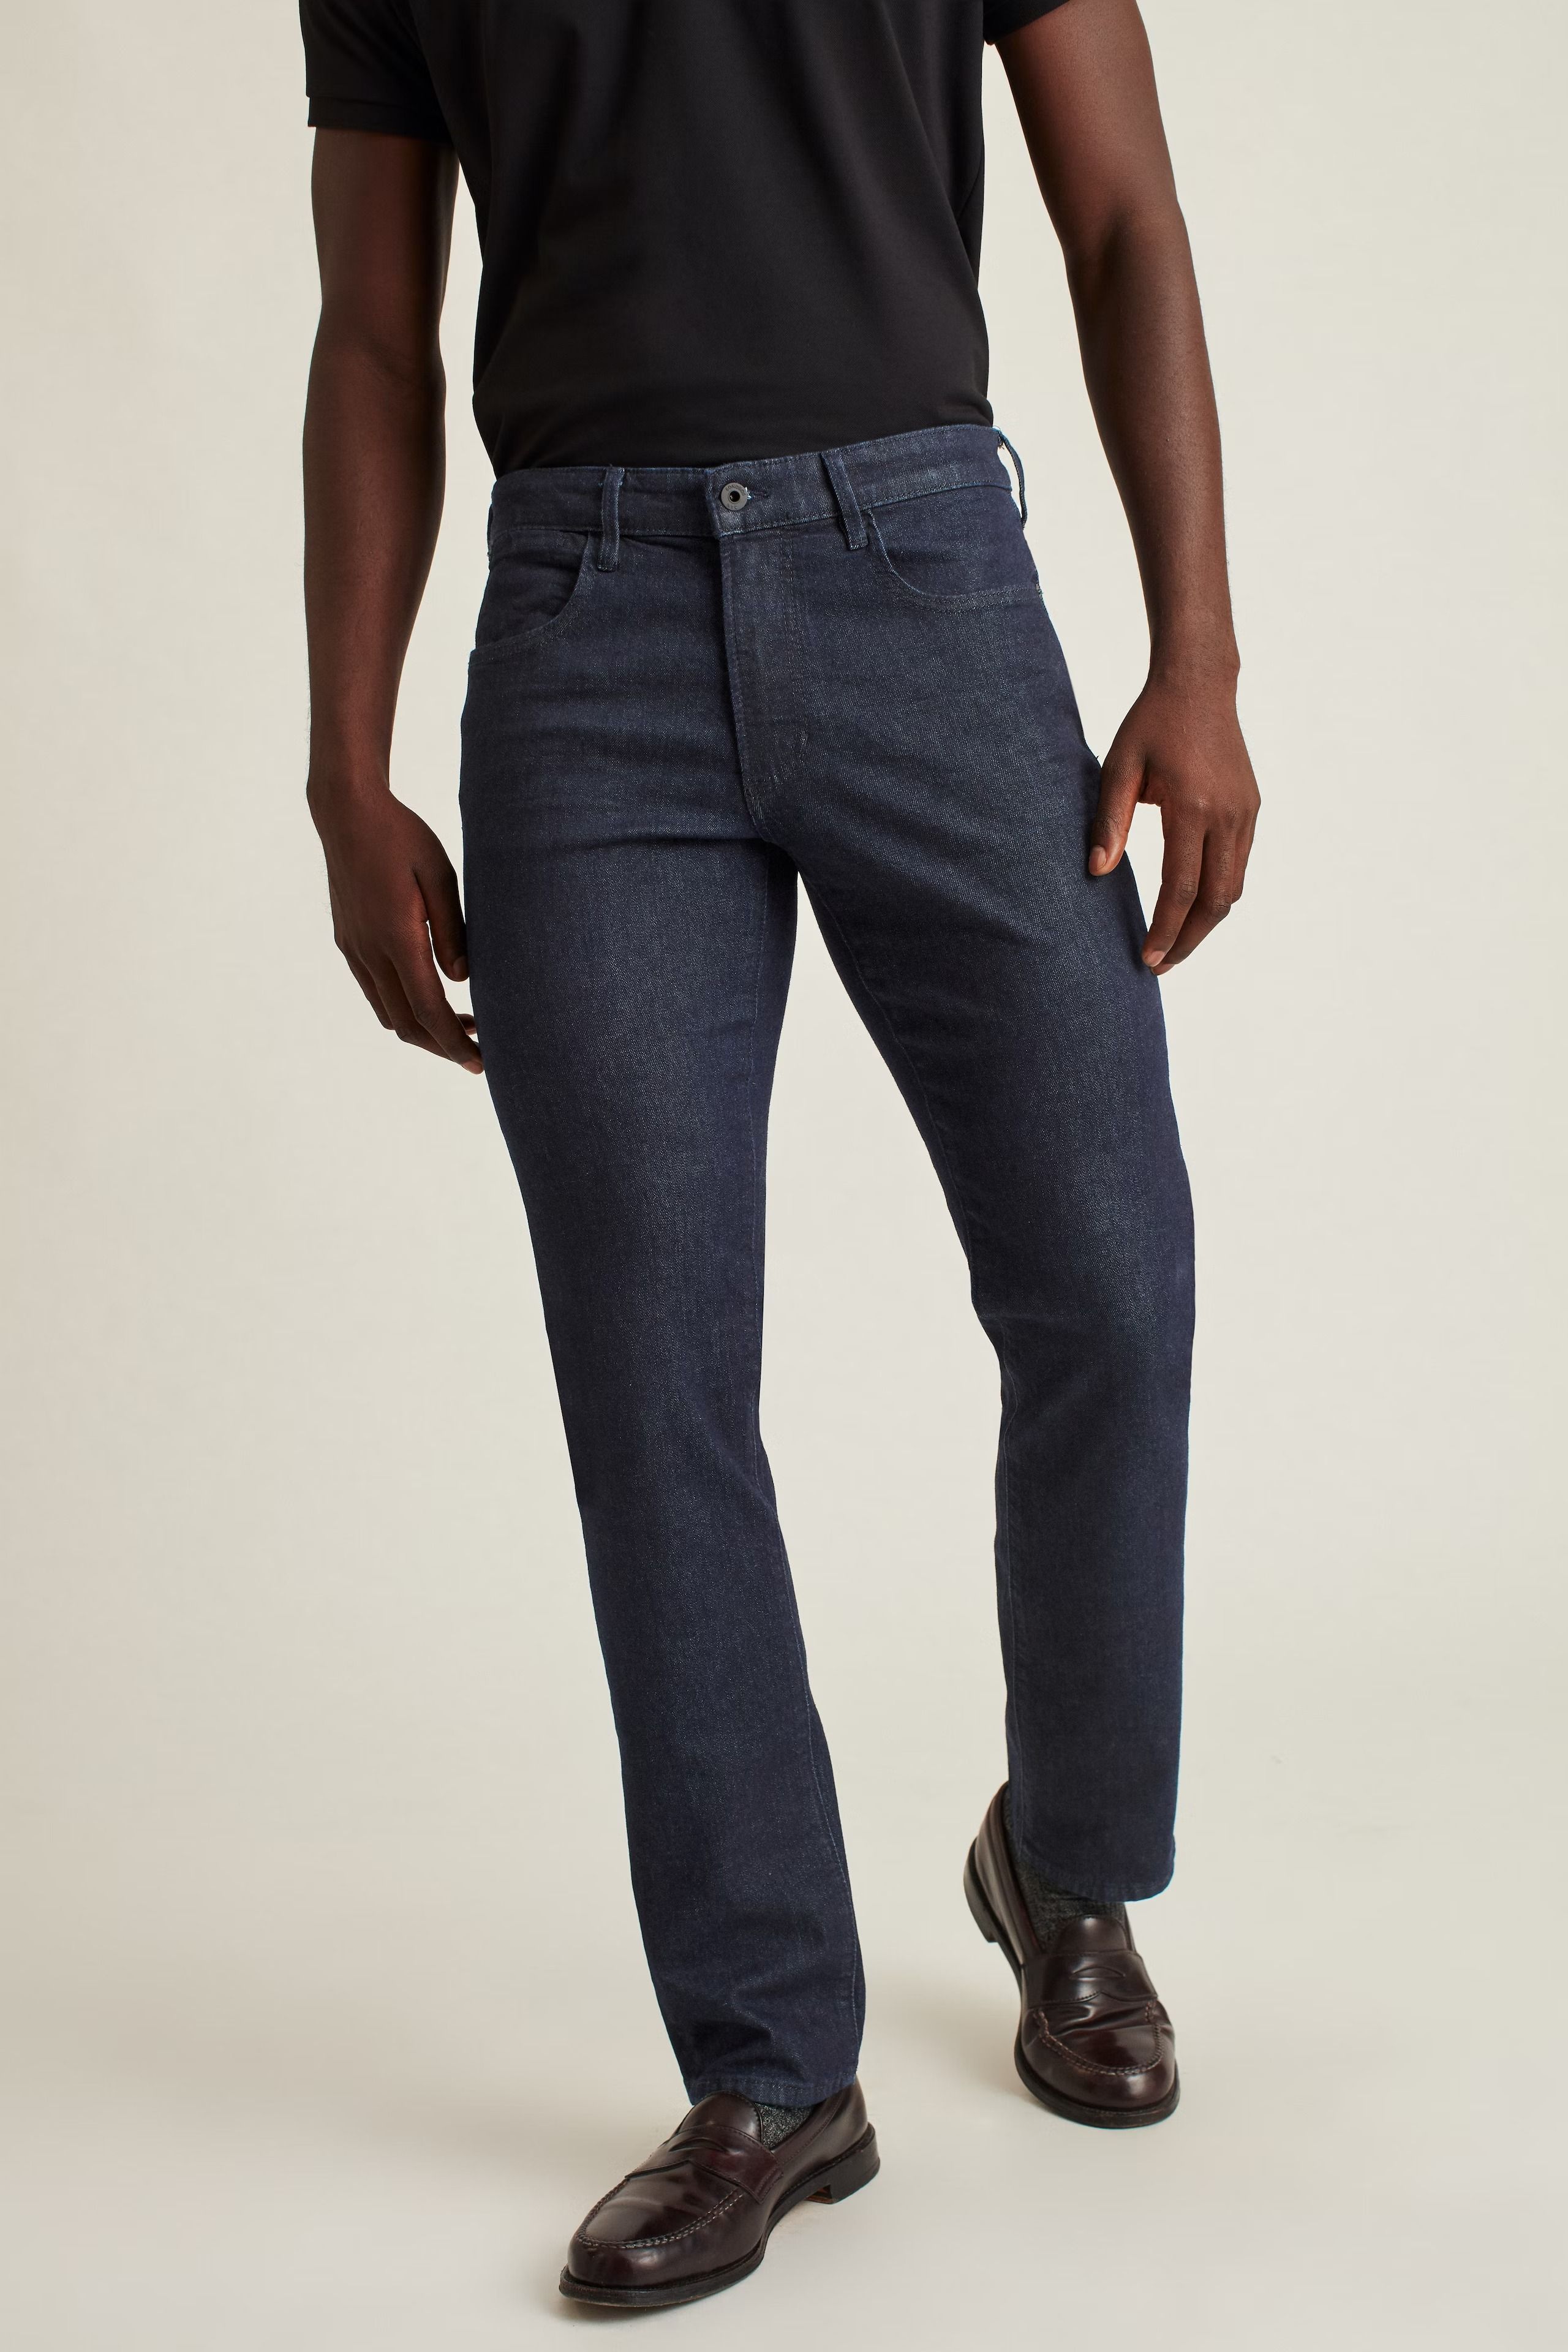 15 Best Jeans for Men 2023 - Best Jeans Brands for Men